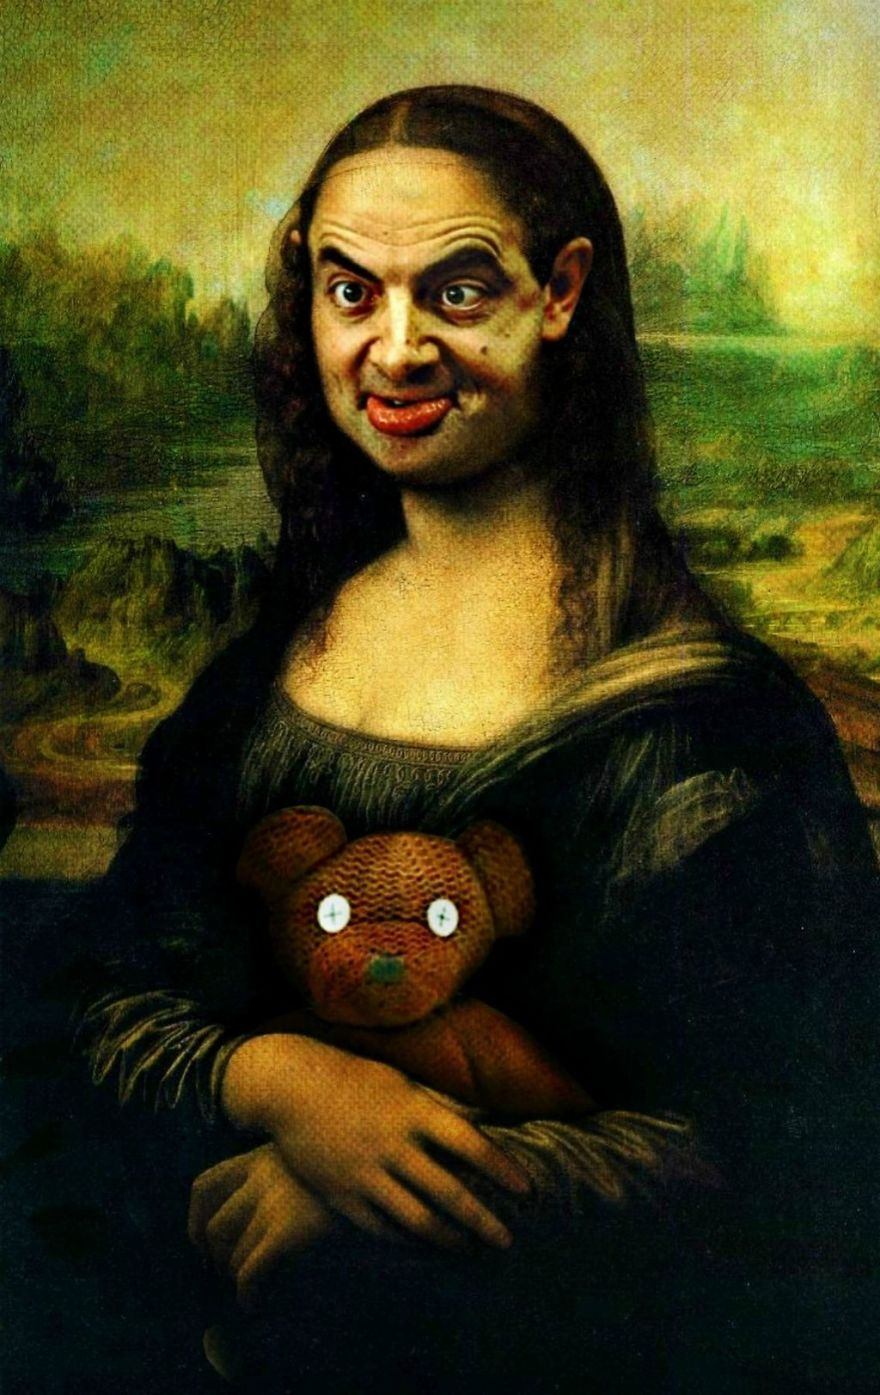 Mr. Bean Photoshop Mağduru Oldu! galerisi resim 1